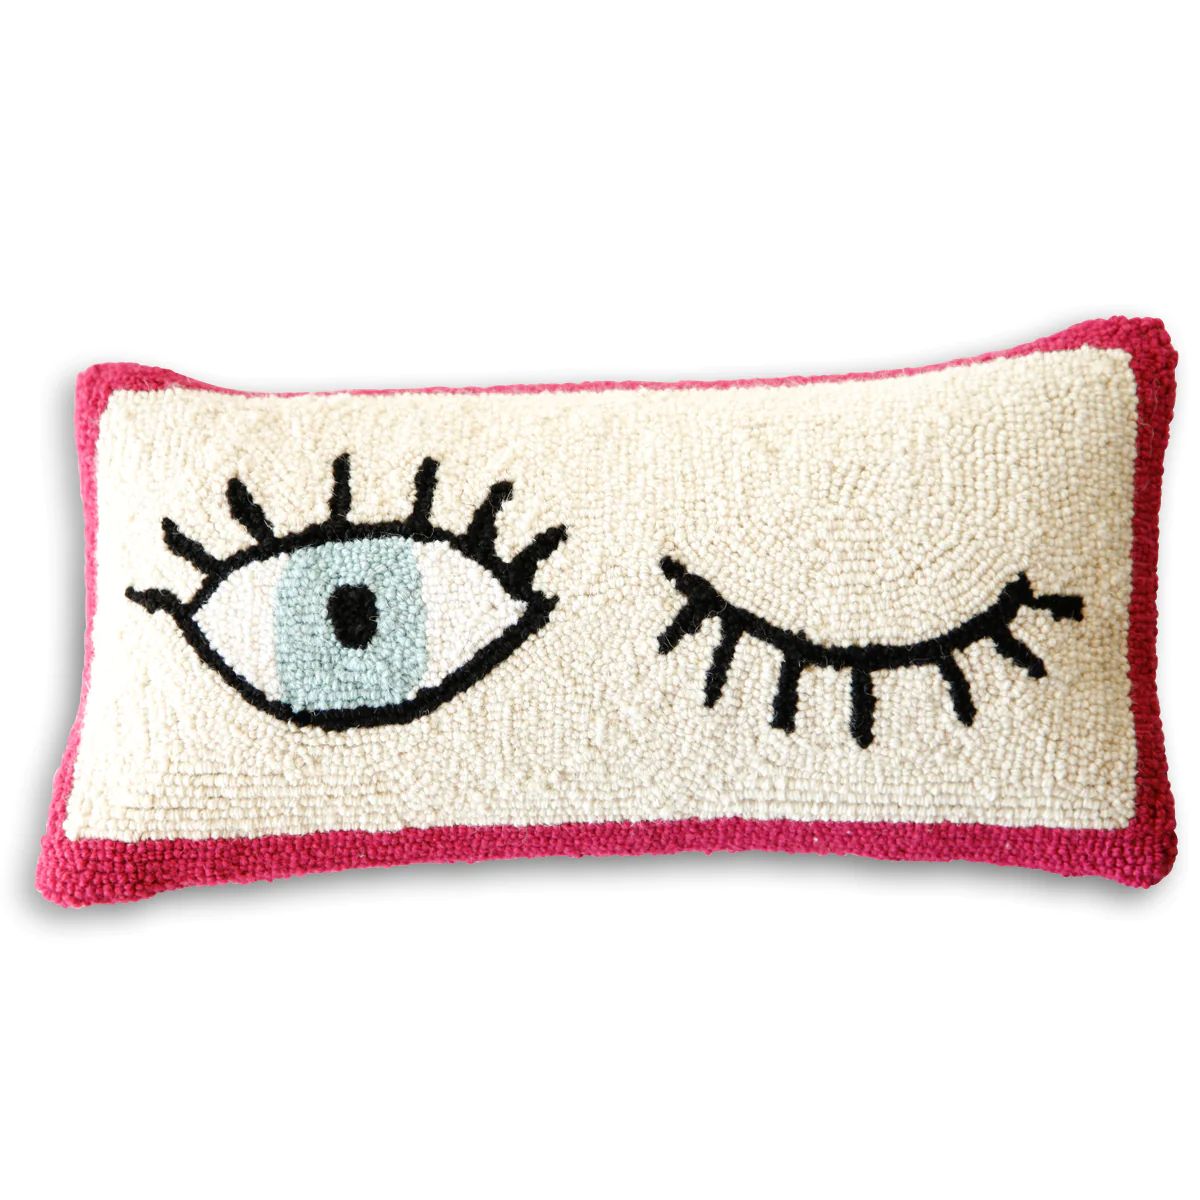 Wink Lumbar Pillow | Furbish Studio